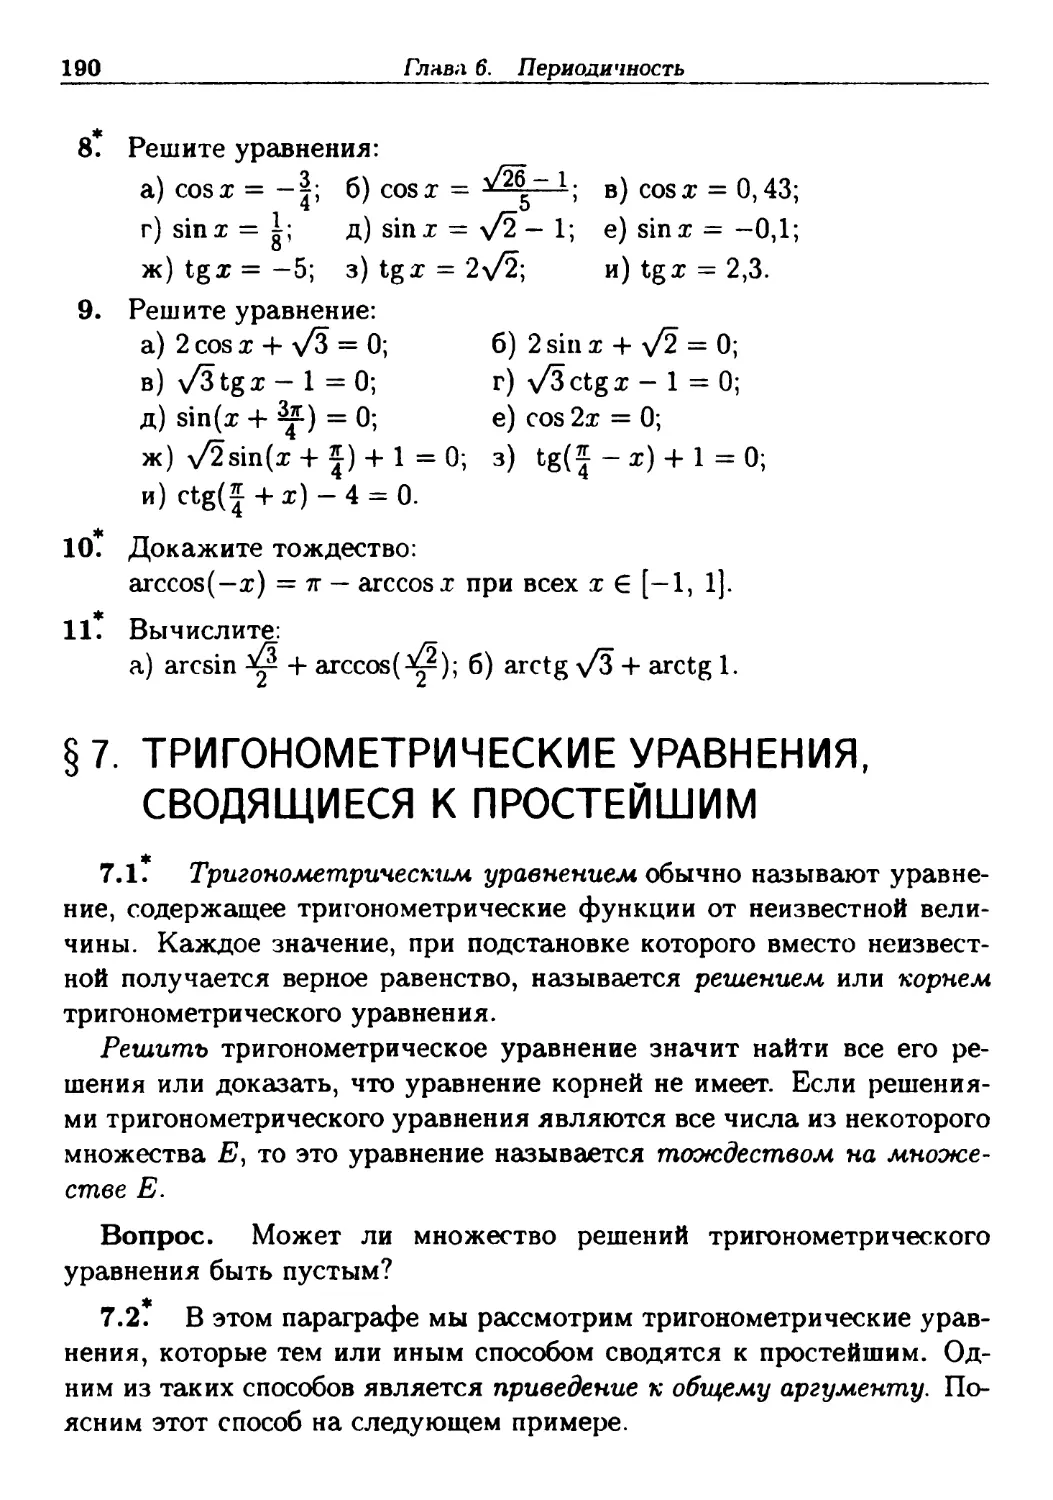 §7. Тригонометрические уравнения, сводящиеся к простейшим